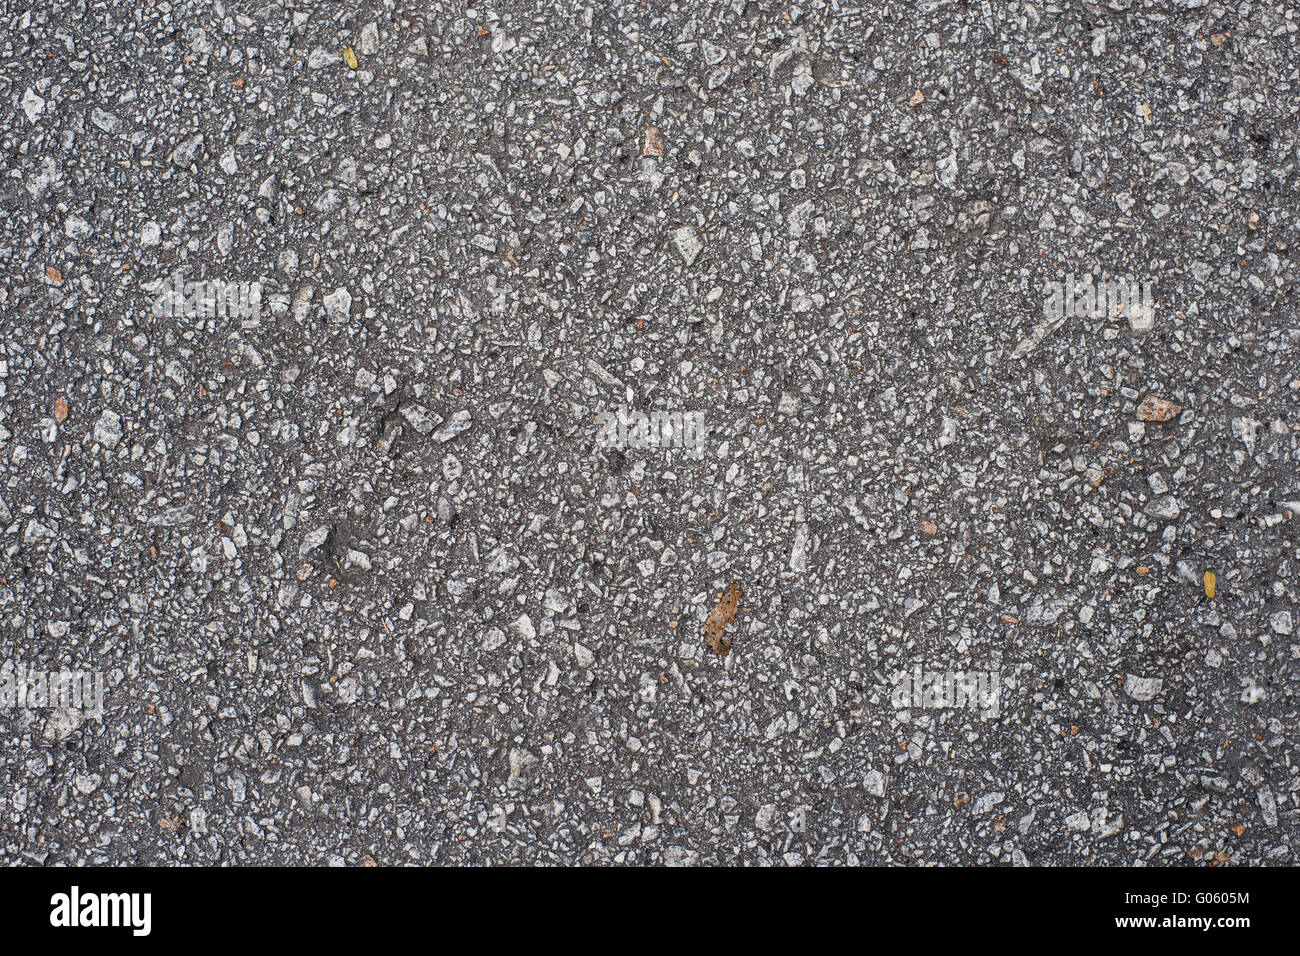 Vieille route asphaltée avec de grandes pierres de grains. Banque D'Images